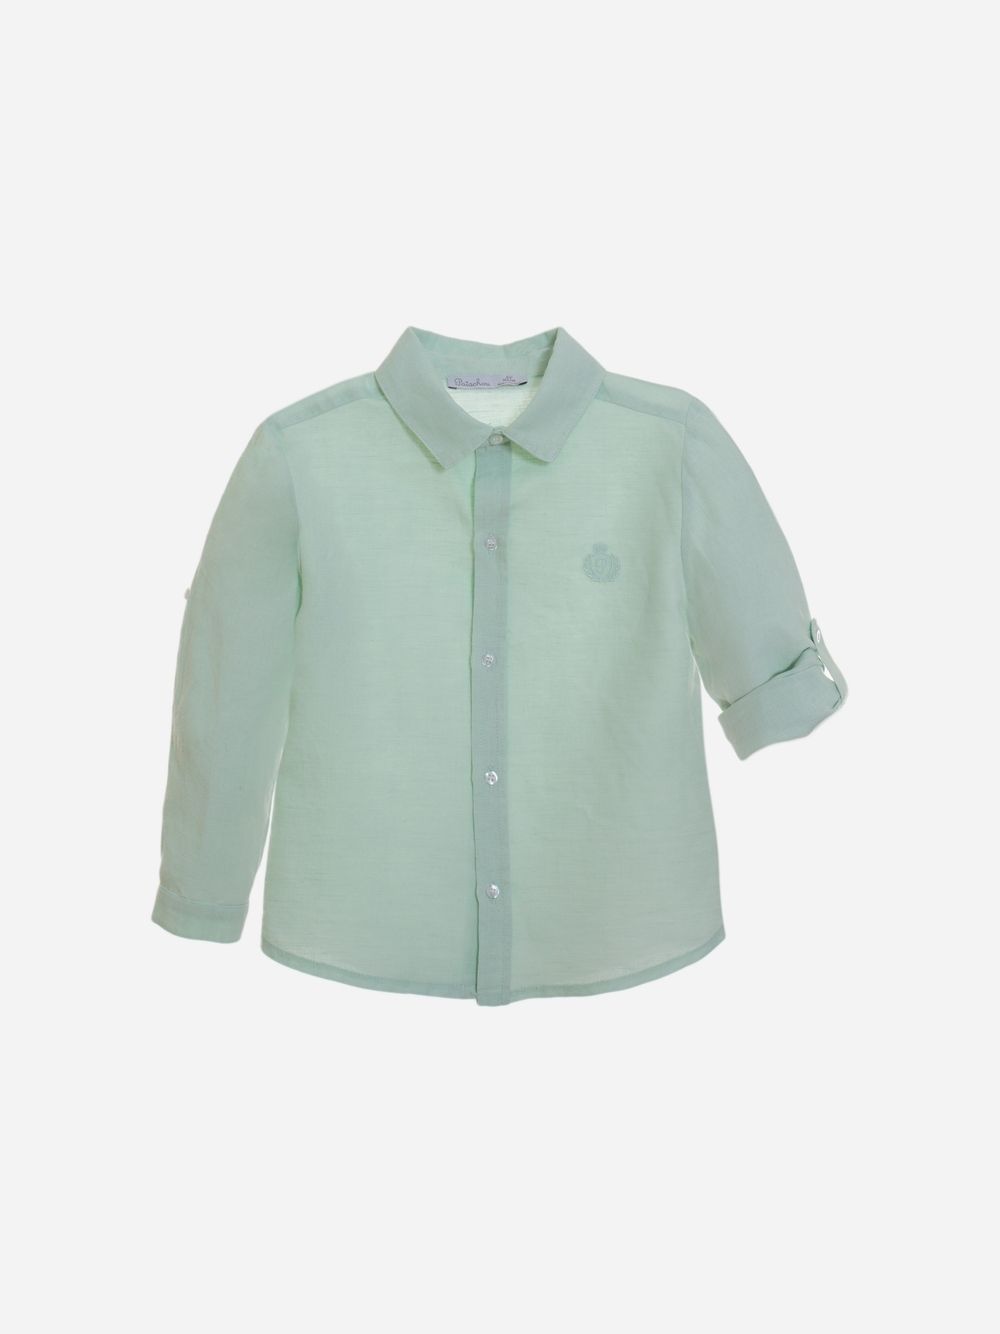 Green Water linen shirt